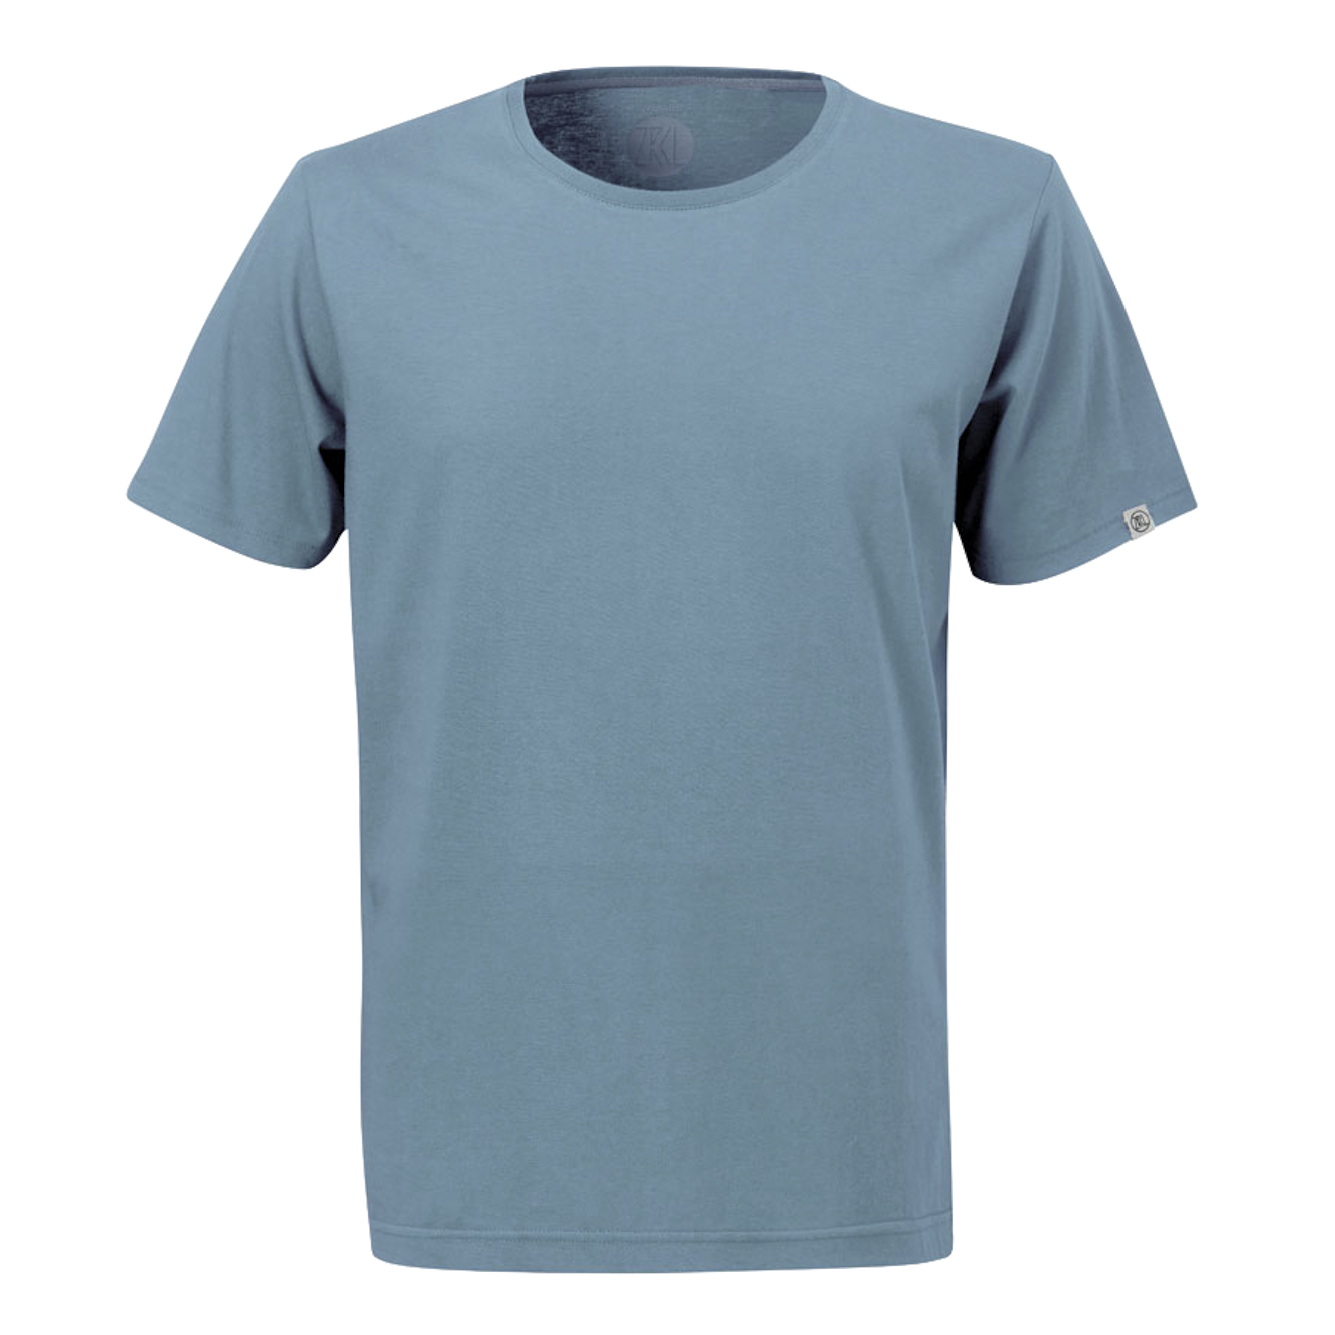 ZRCL ZRCL, M Basic T-Shirt, steel blue, L